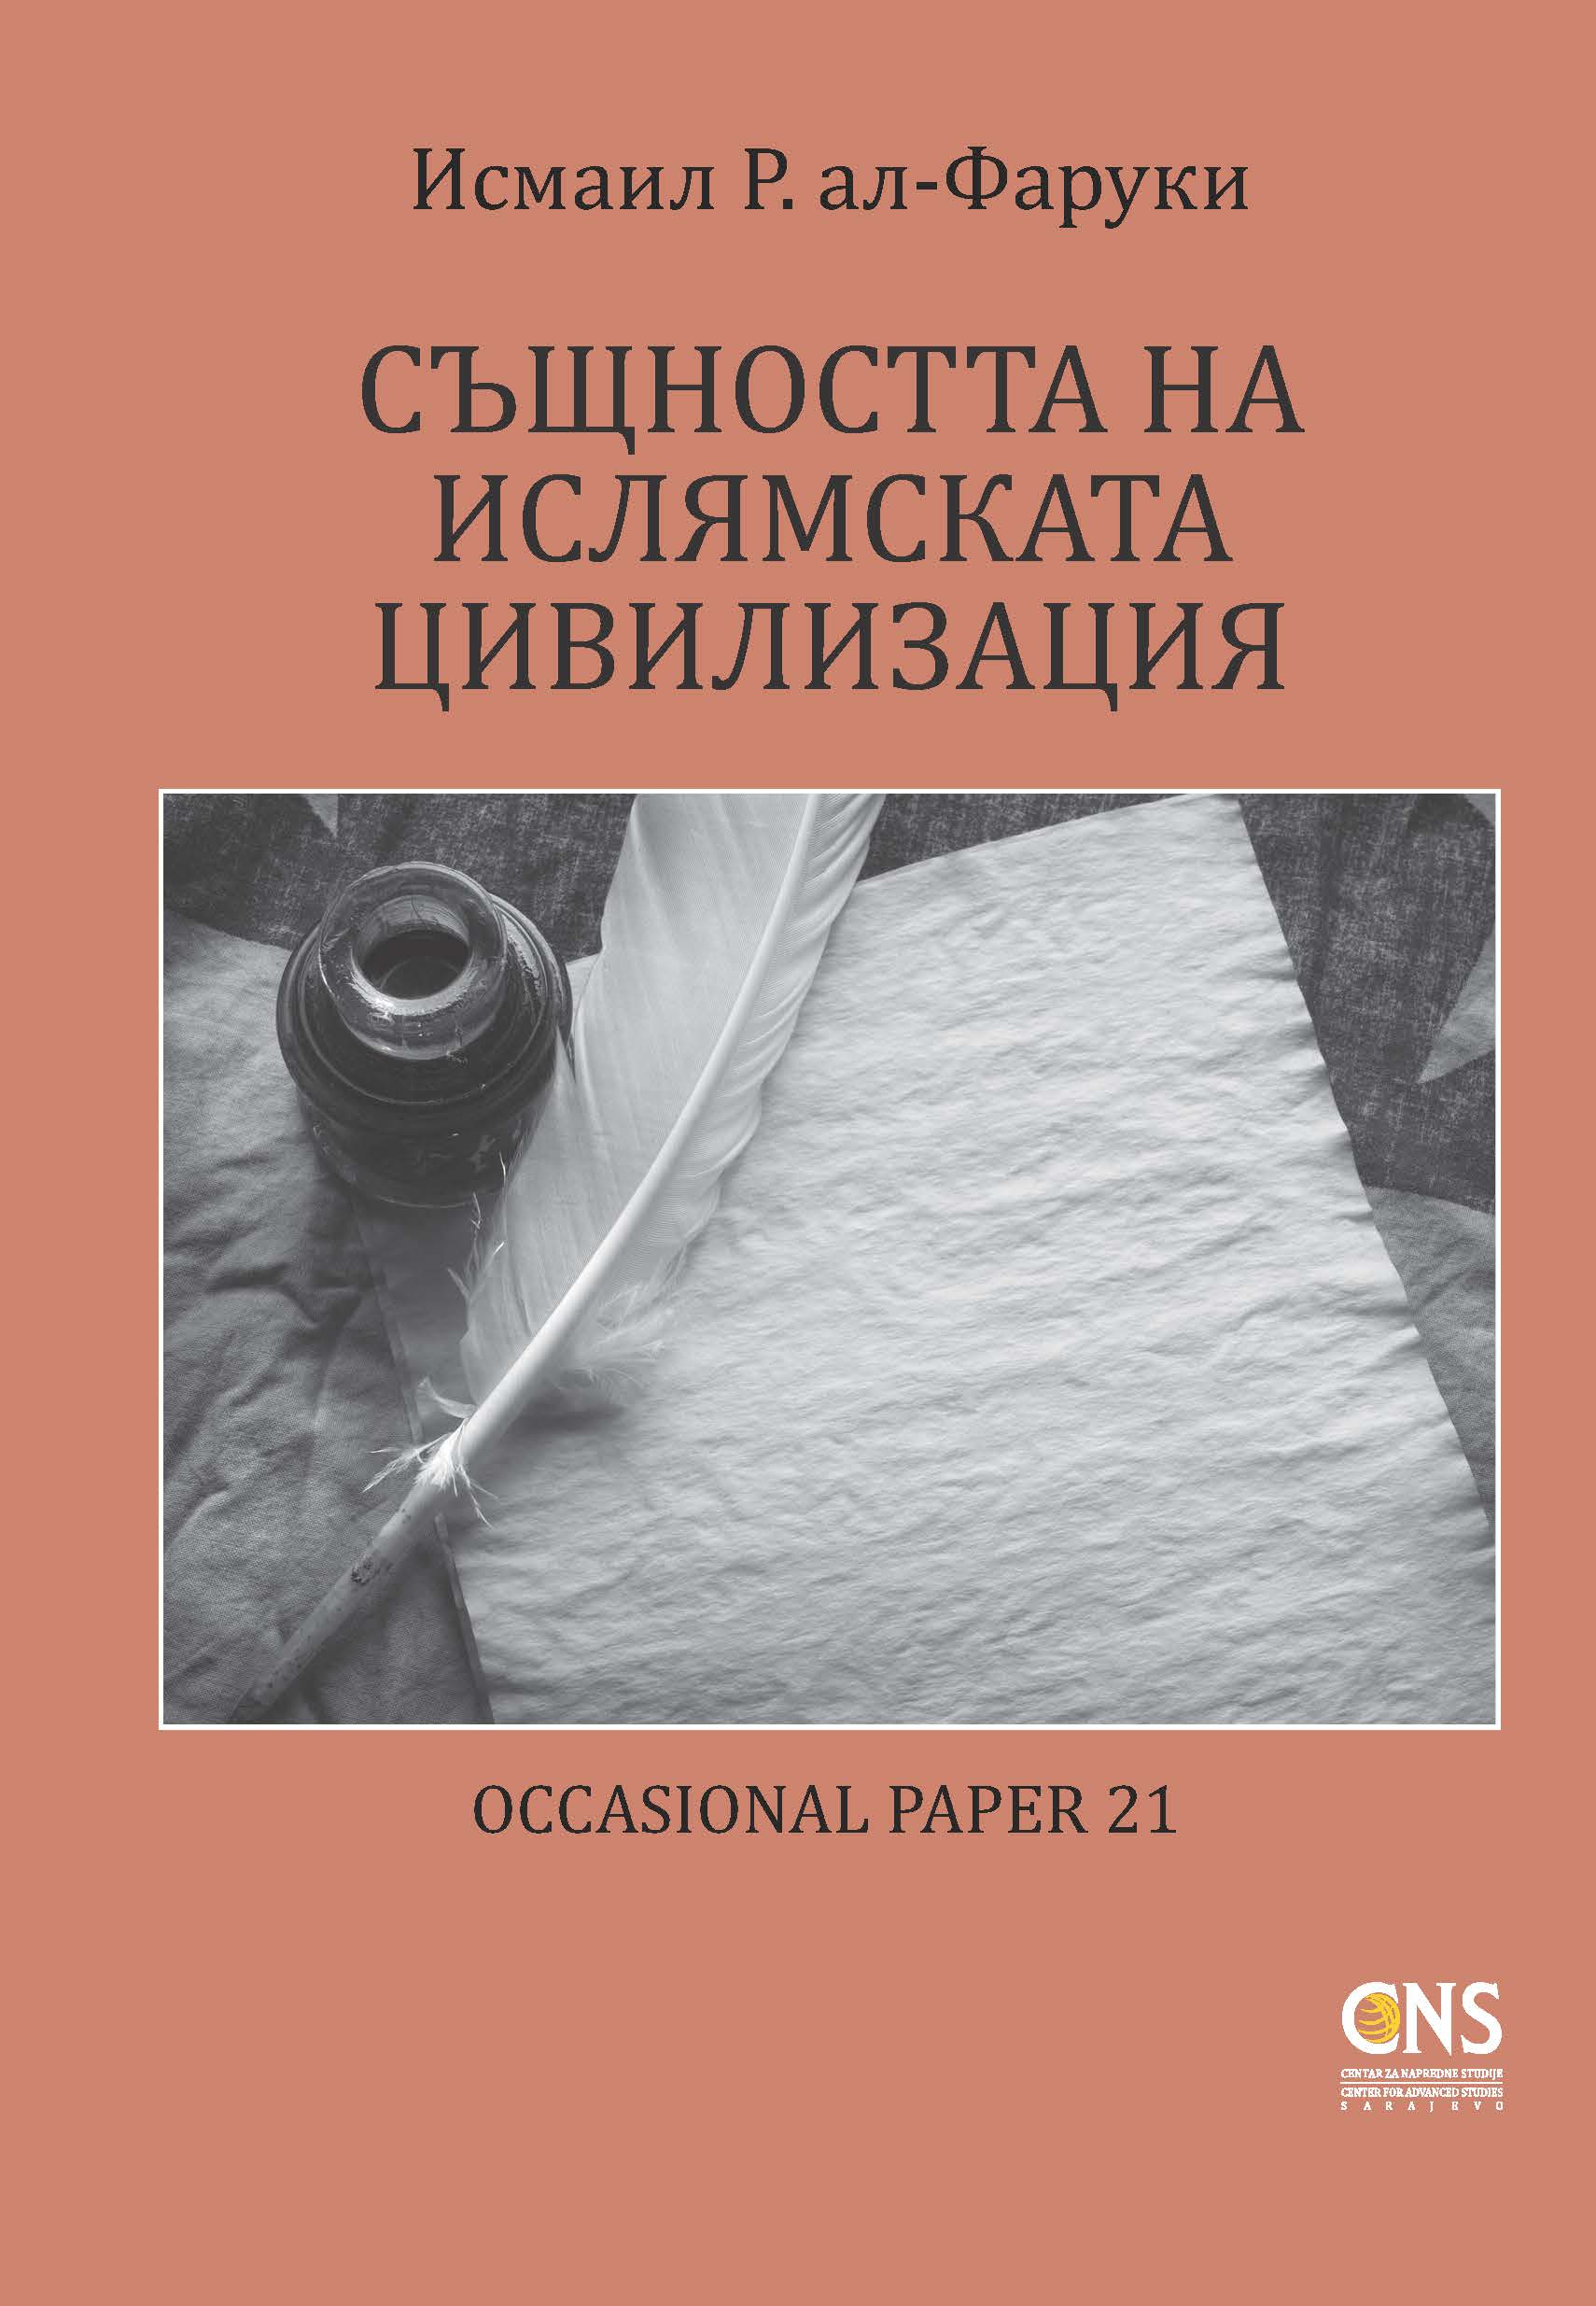 Bulgarian: Същността на Ислямската цивилизация (The Essence of Islamic Civilization – Occasional Paper)